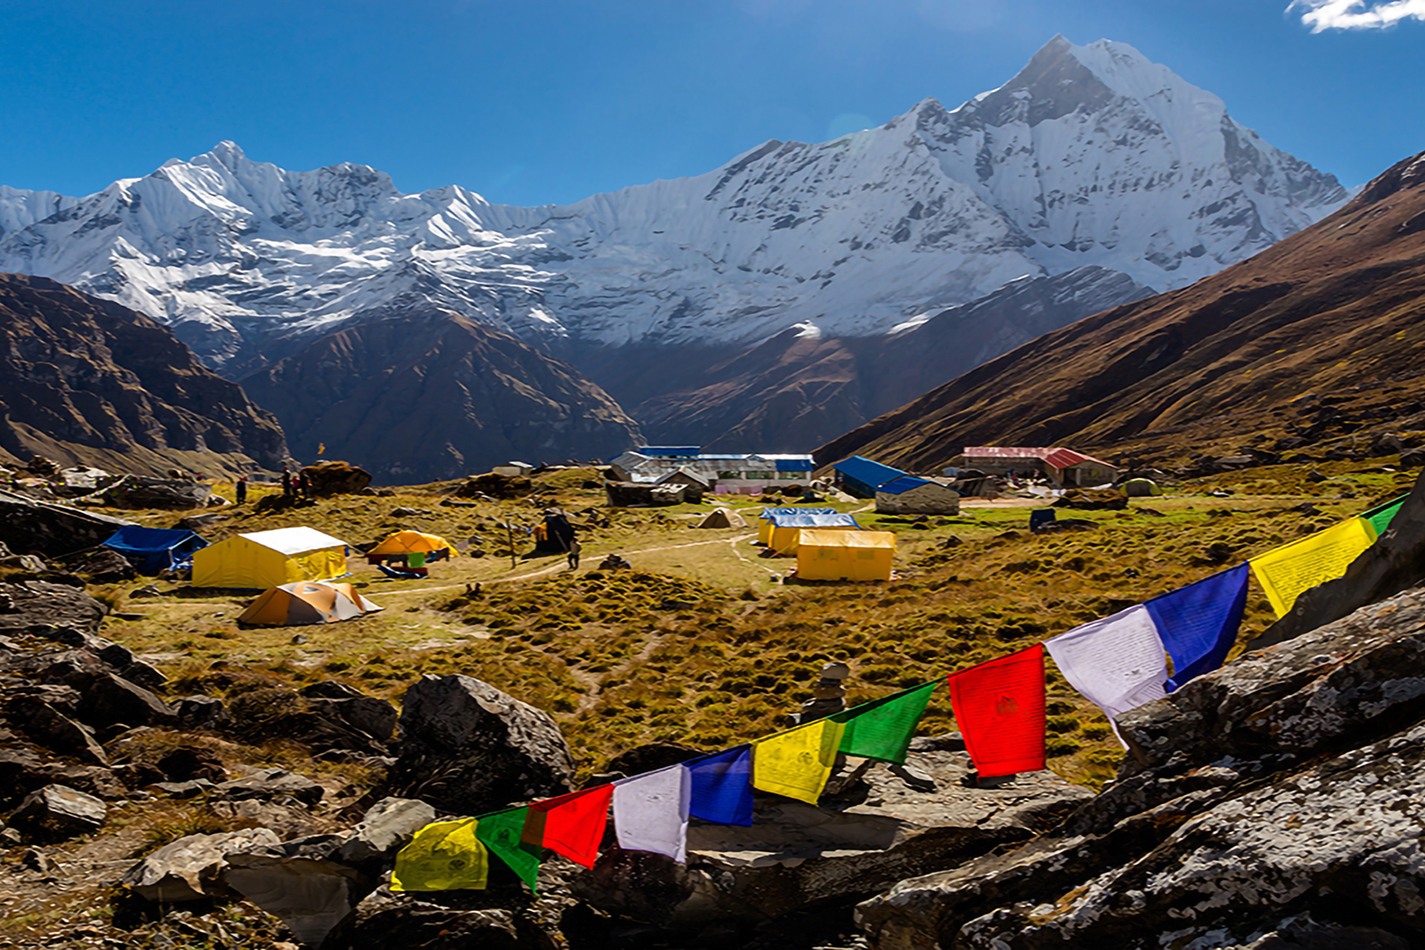 The Annapurna Base Camp Trek